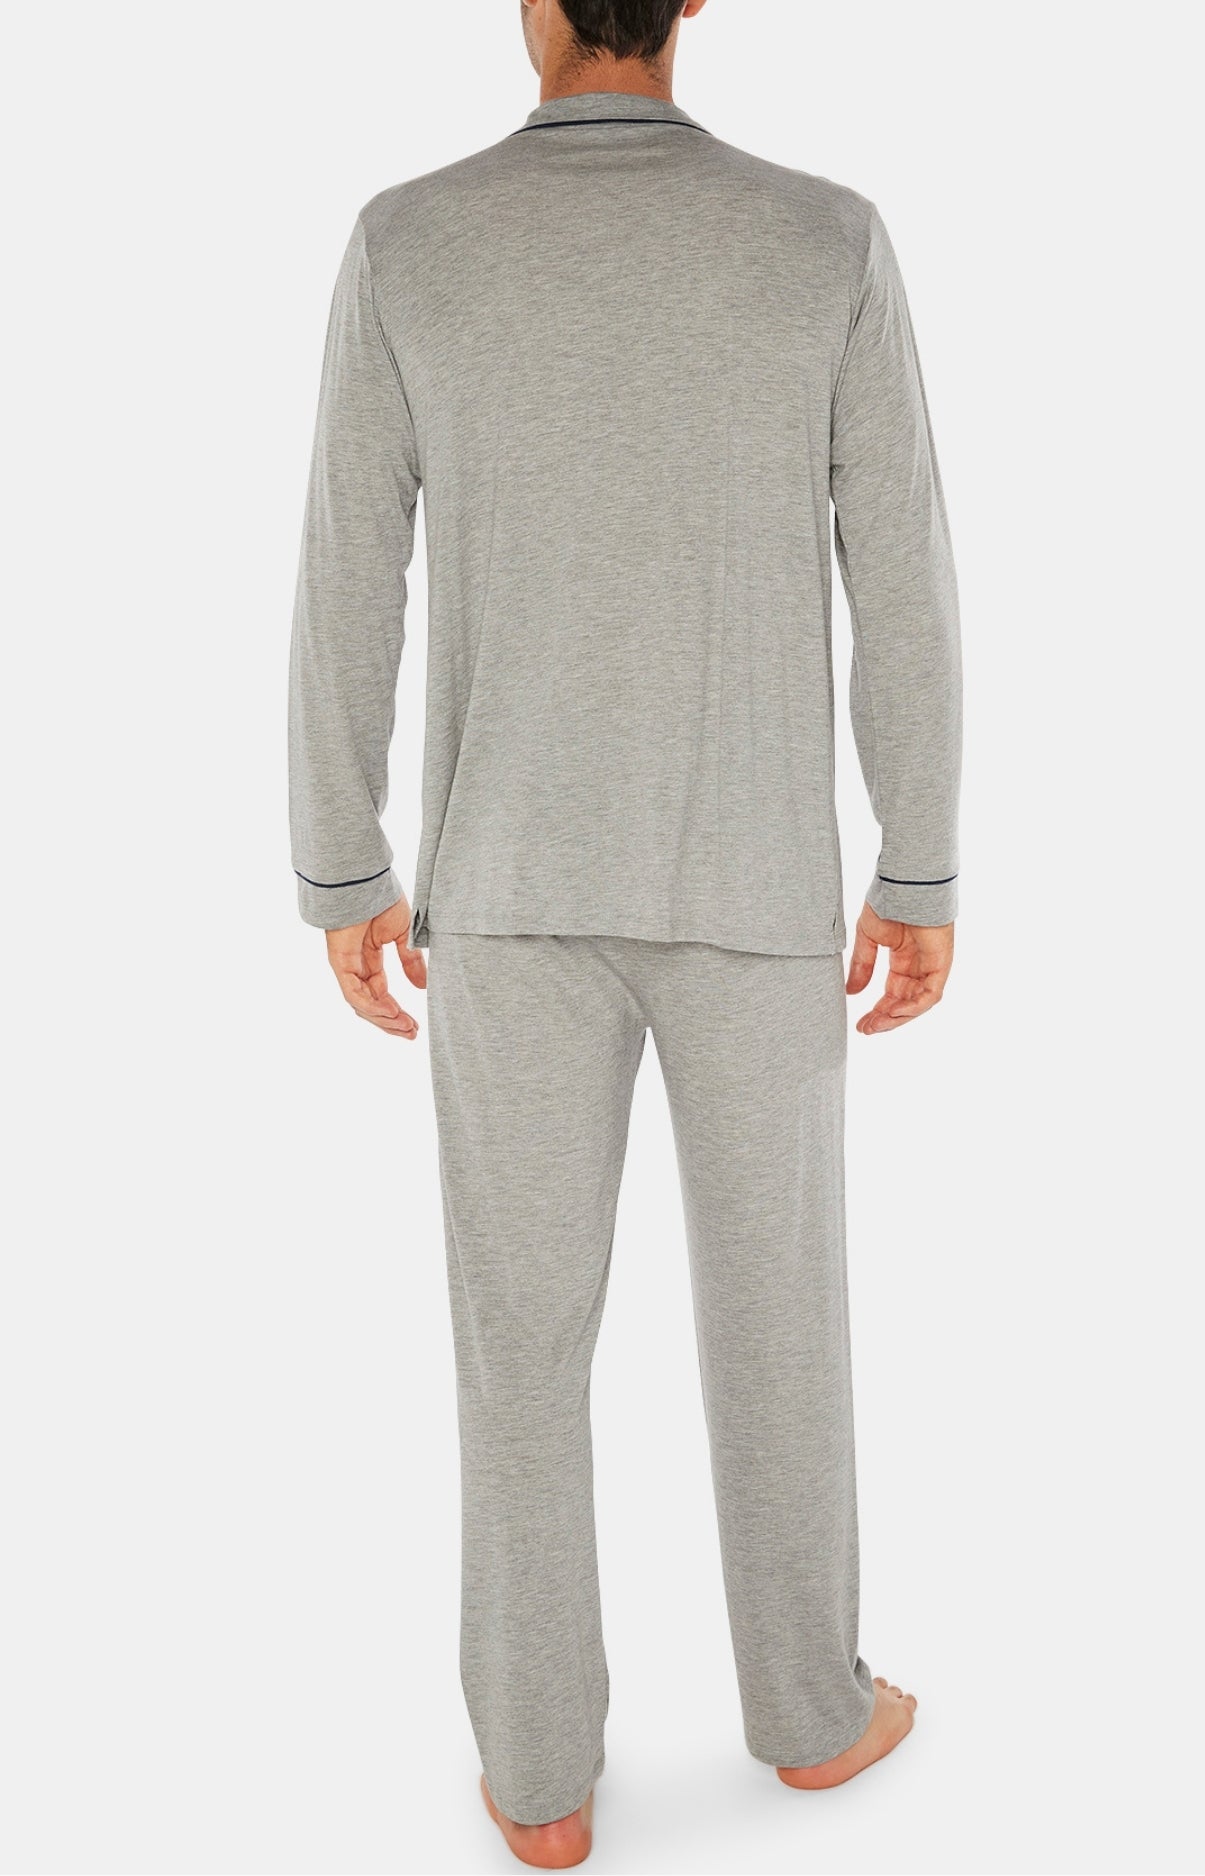 Marl Gray Buttoned Pajamas